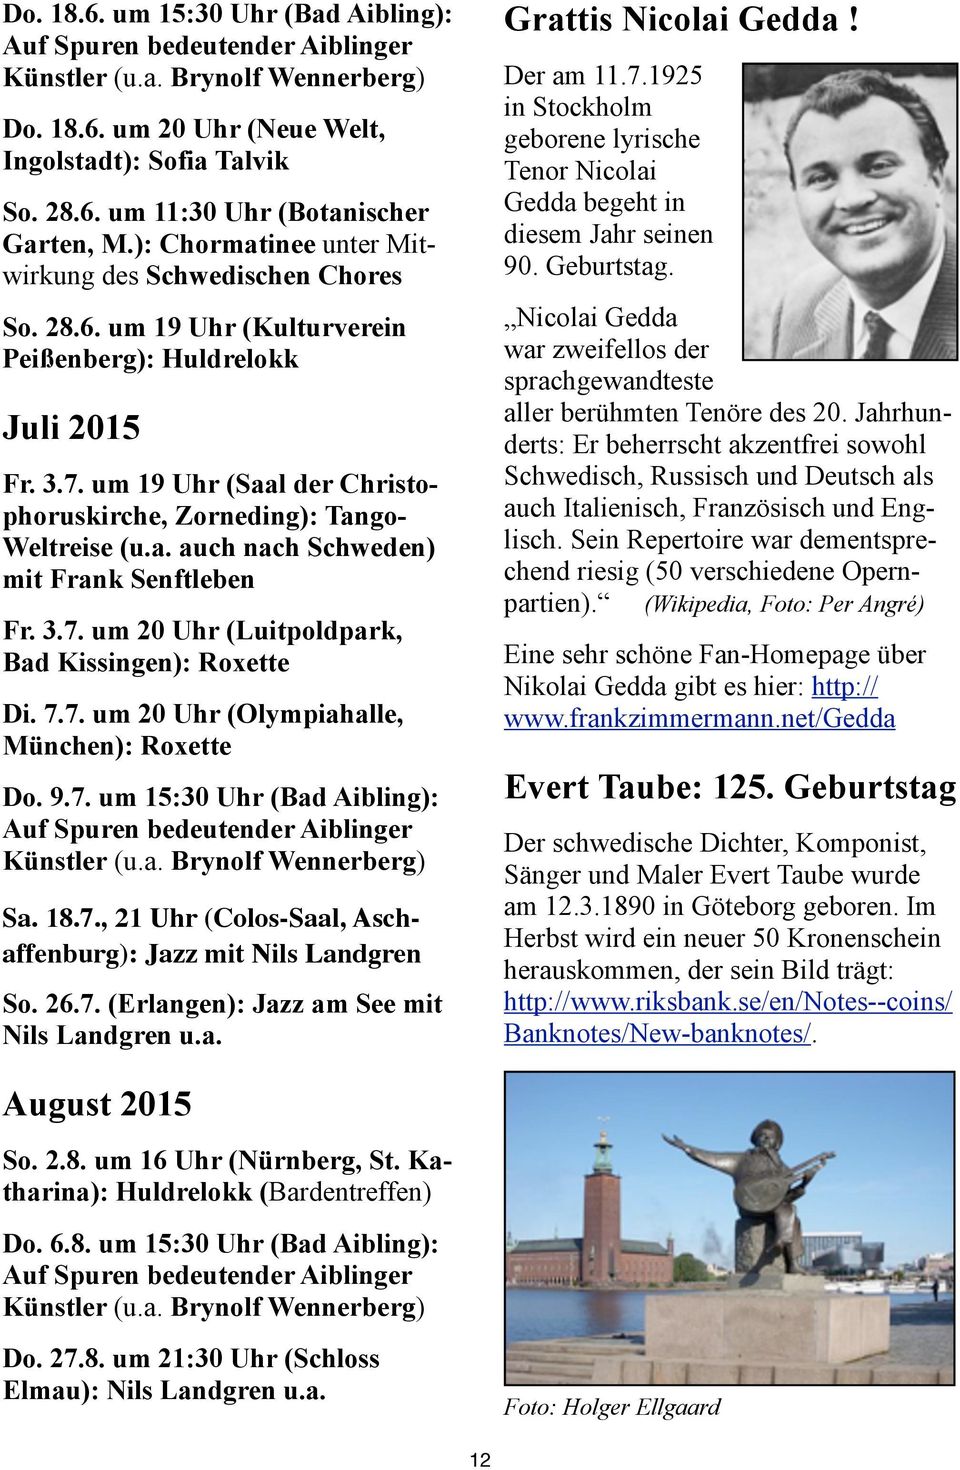 um 19 Uhr (Saal der Christophoruskirche, Zorneding): Tango- Weltreise (u.a. auch nach Schweden) mit Frank Senftleben Fr. 3.7. um 20 Uhr (Luitpoldpark, Bad Kissingen): Roxette Di. 7.7. um 20 Uhr (Olympiahalle, München): Roxette Do.